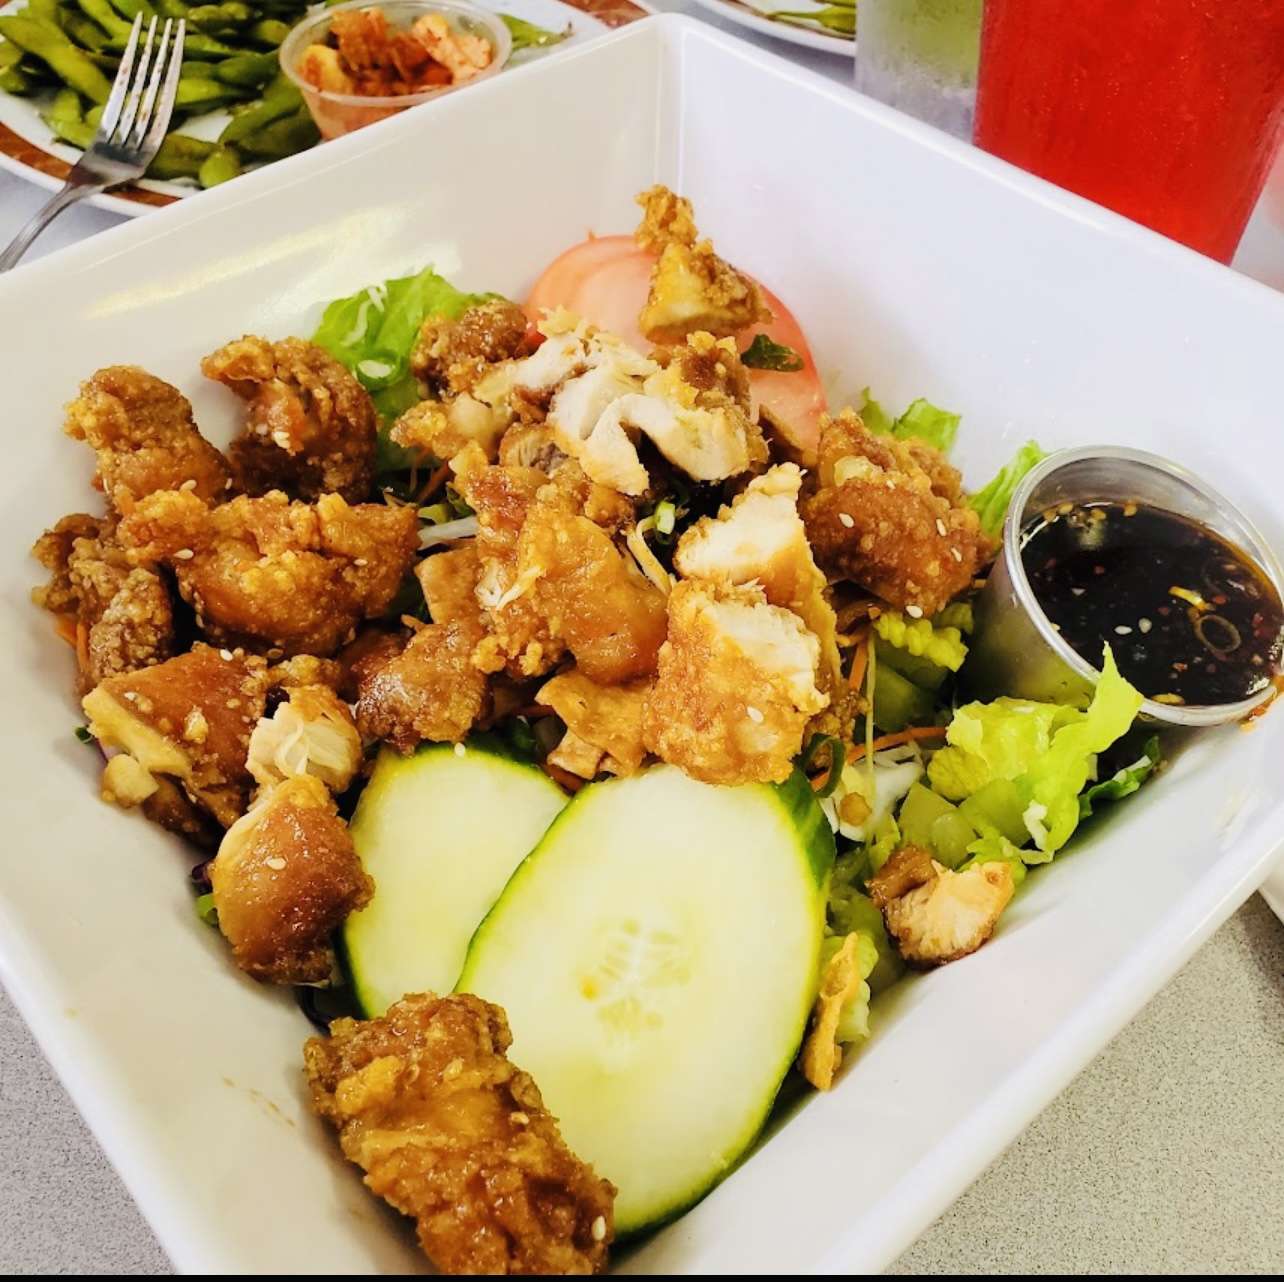 Korean Chicken Salad from Restaurant Kenichi, Hilo, Hawaii.